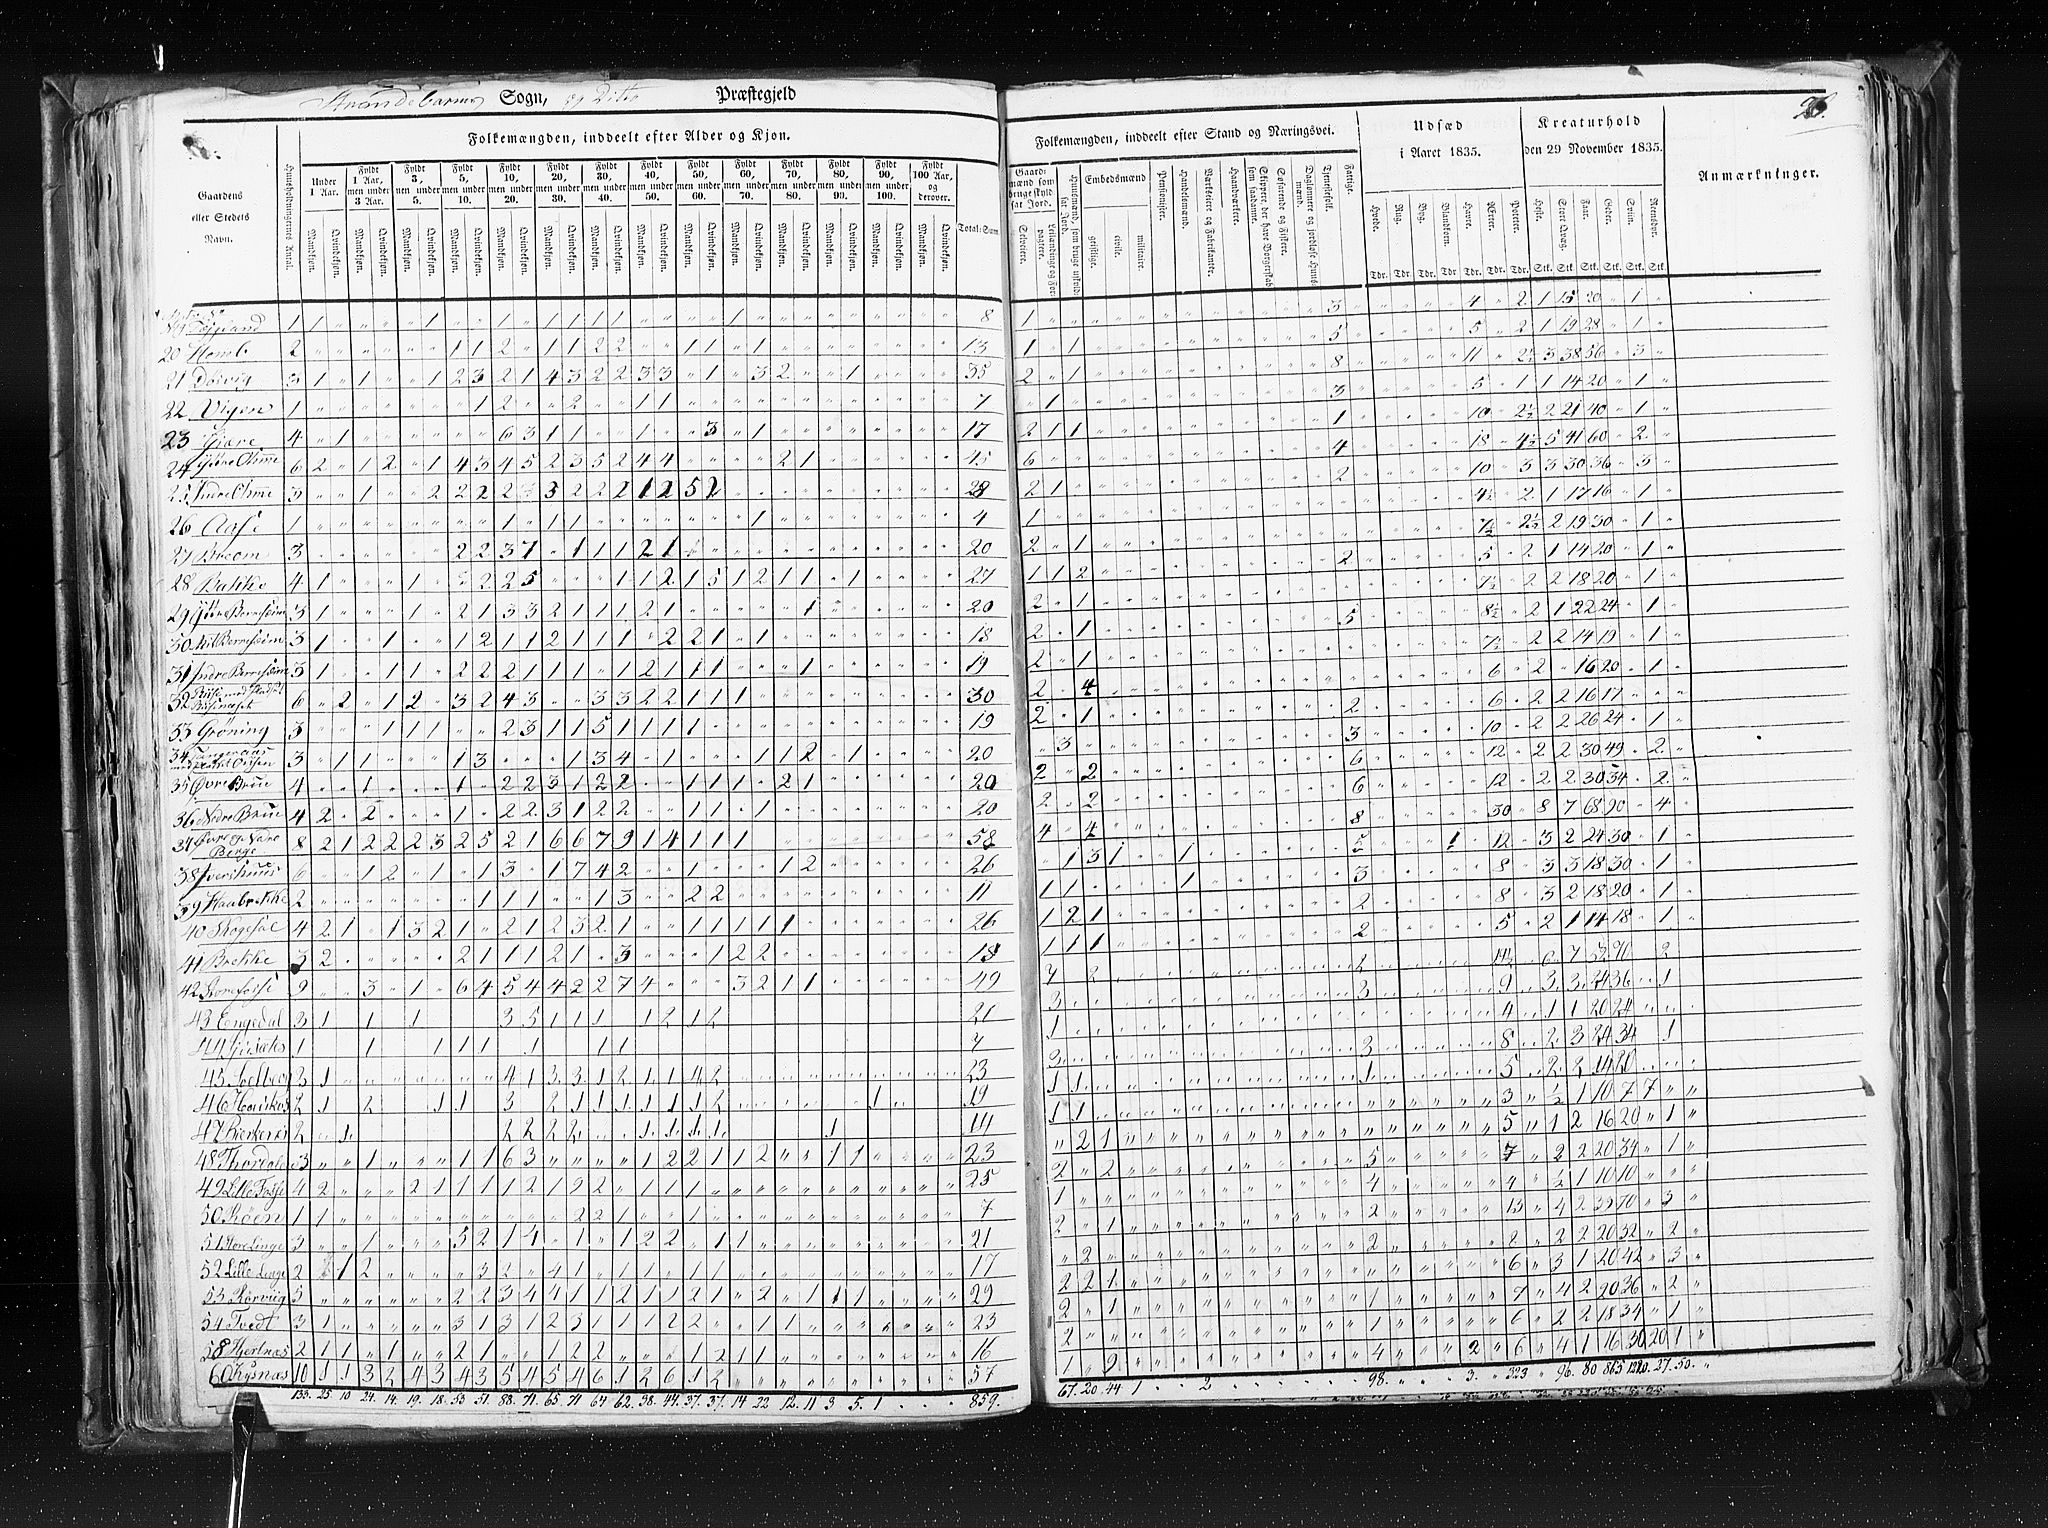 RA, Census 1835, vol. 7: Søndre Bergenhus amt og Nordre Bergenhus amt, 1835, p. 96